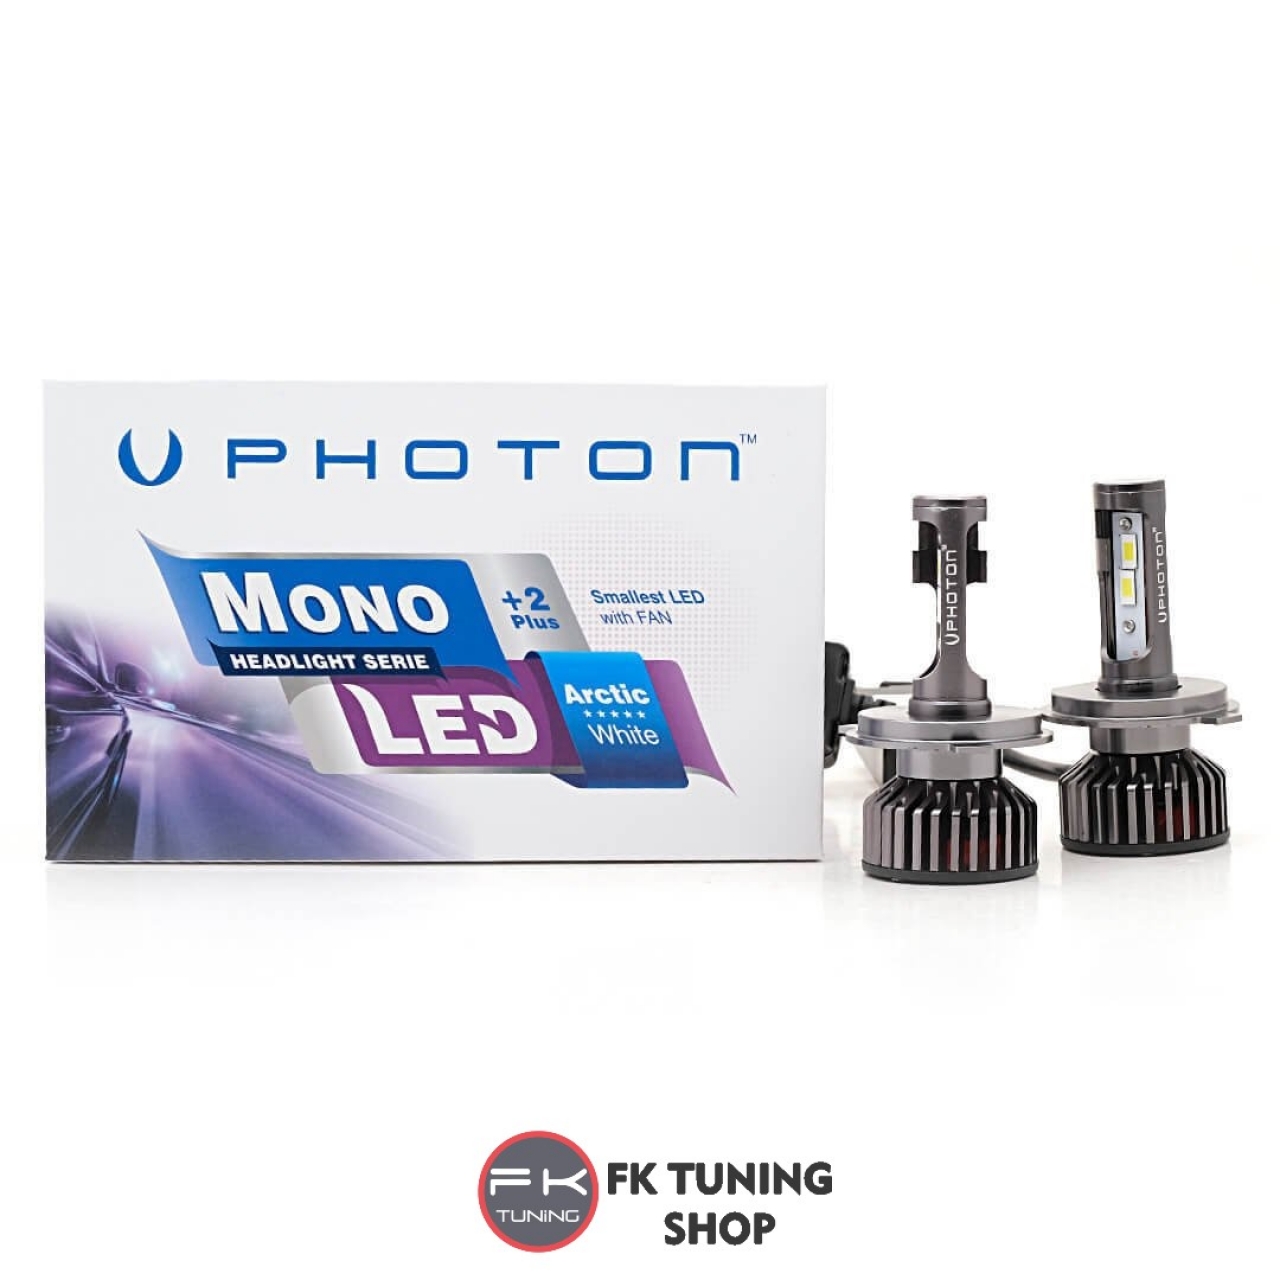 PHOTON H8 / H9 LED XENON MONO SERİSİ +2 Plus Serisi 